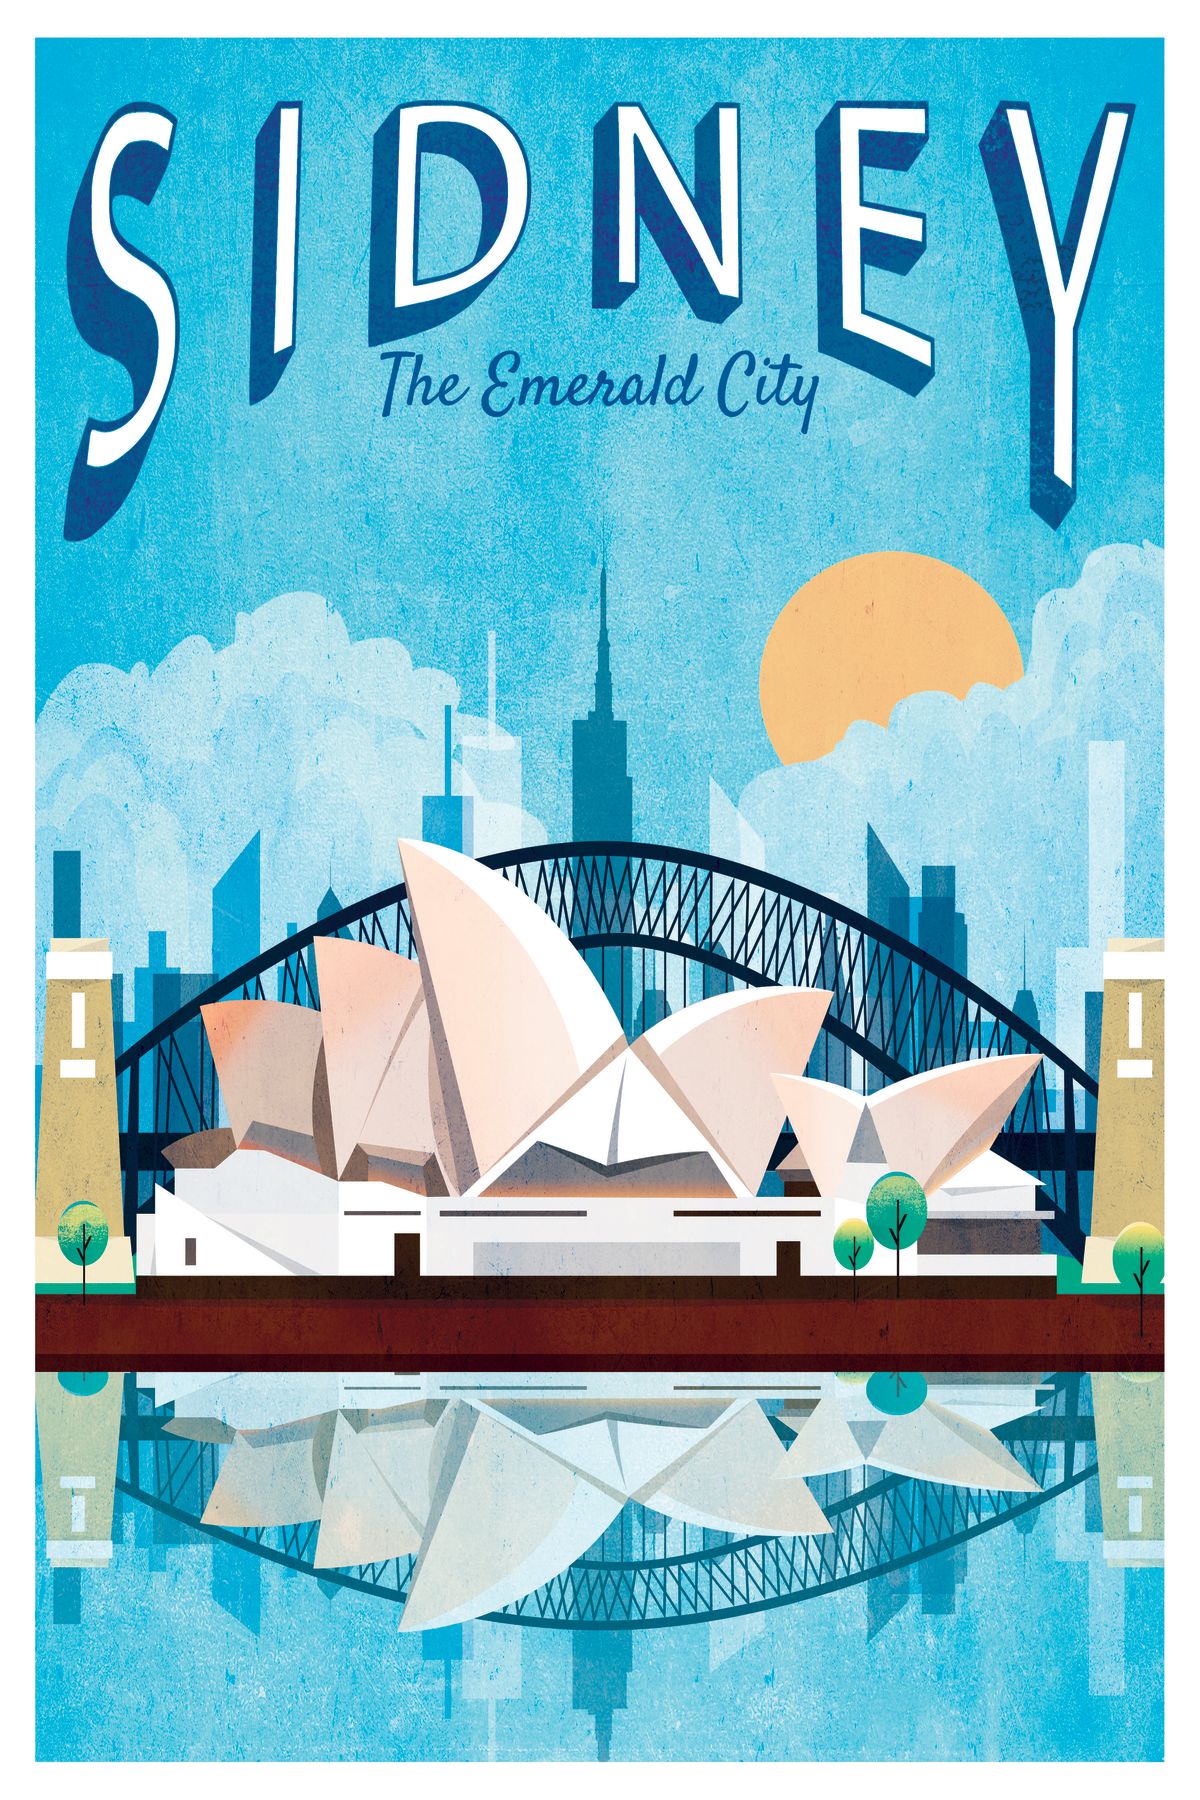 Sydney Tourism Vintage Poster